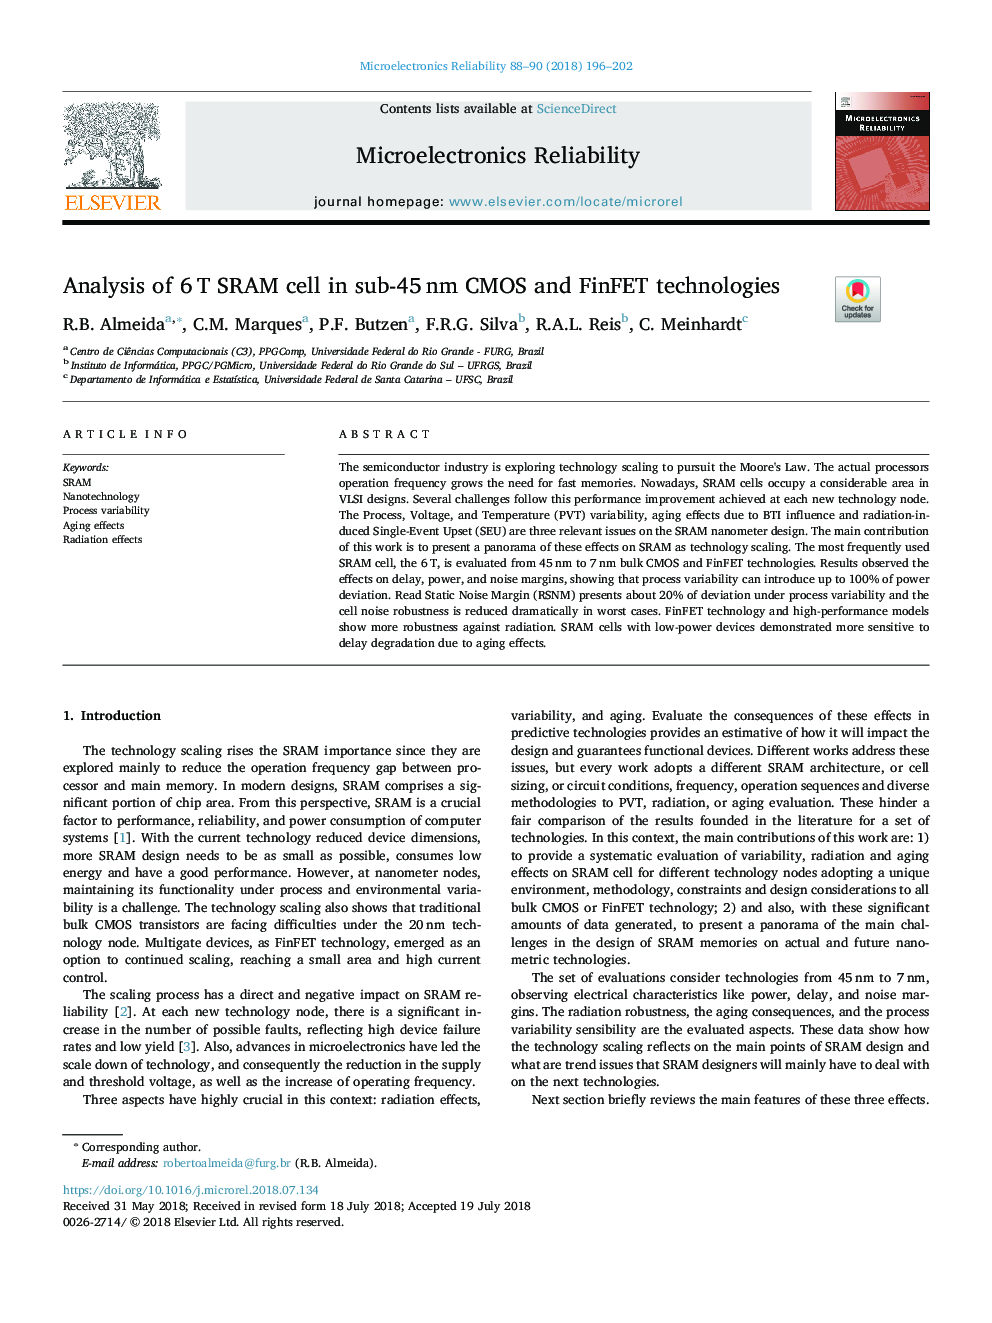 Analysis of 6â¯T SRAM cell in sub-45â¯nm CMOS and FinFET technologies